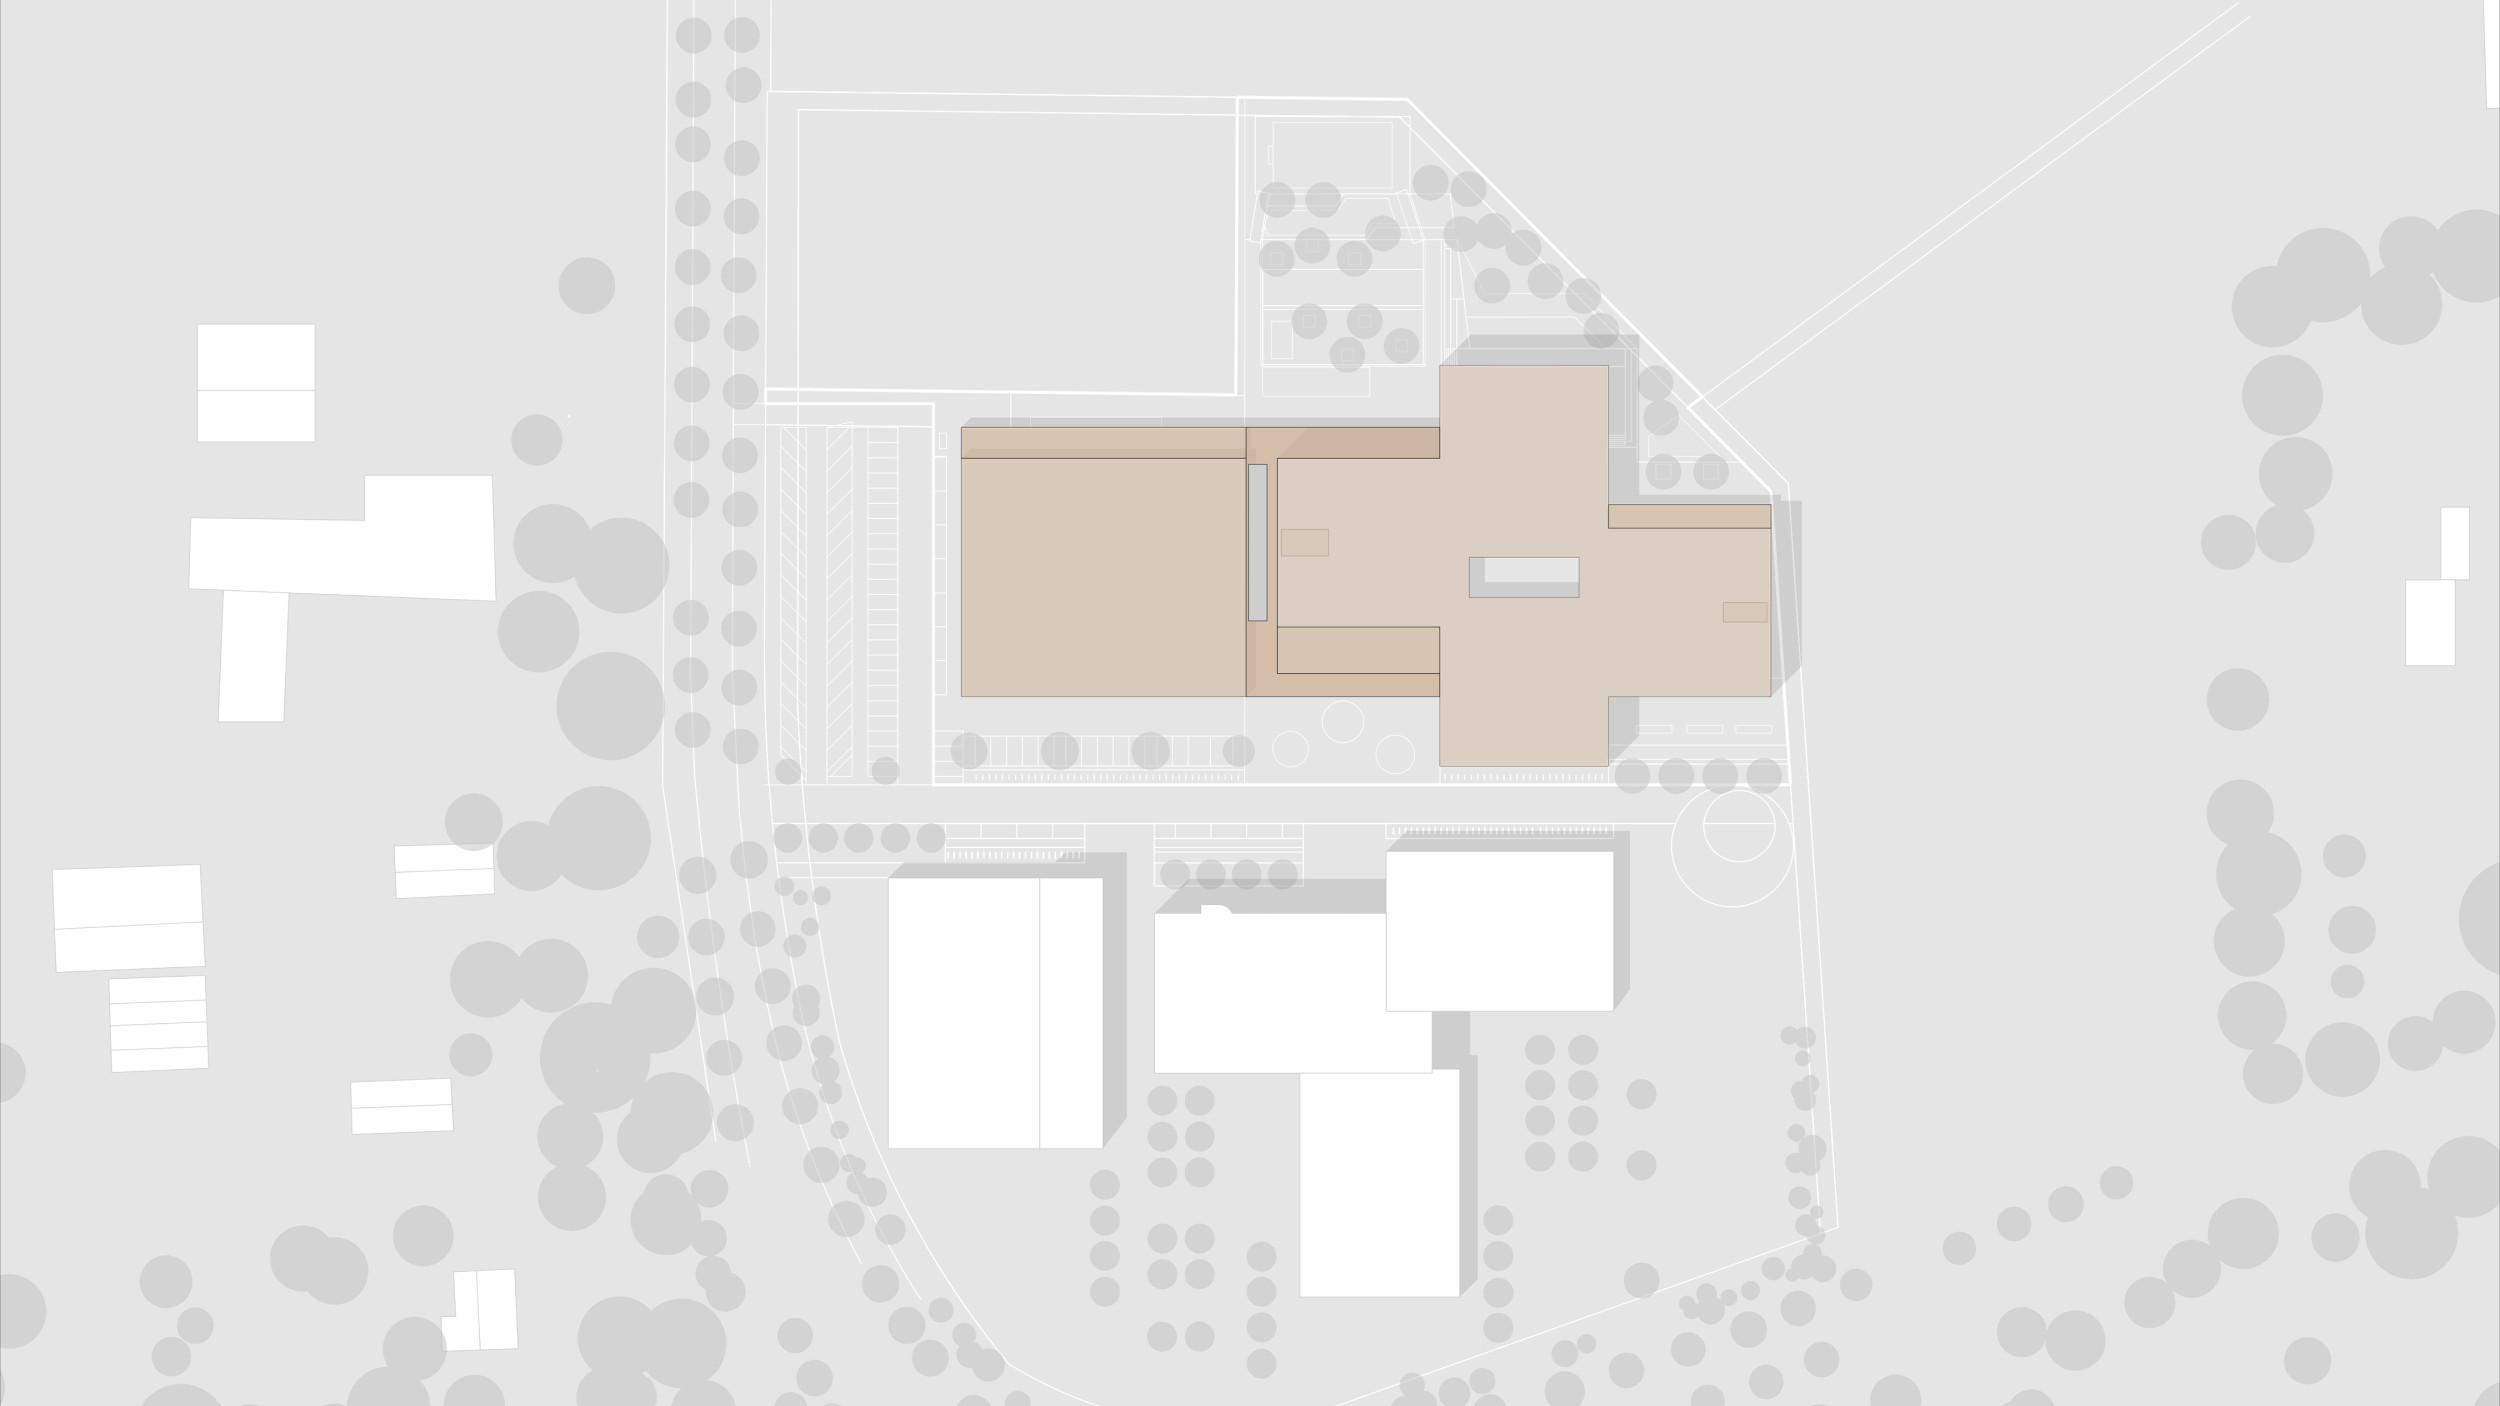 Grafik zeigt den Lageplan des gesamten Schulgeländes inklusive der angrenzenden Nachbarschule.